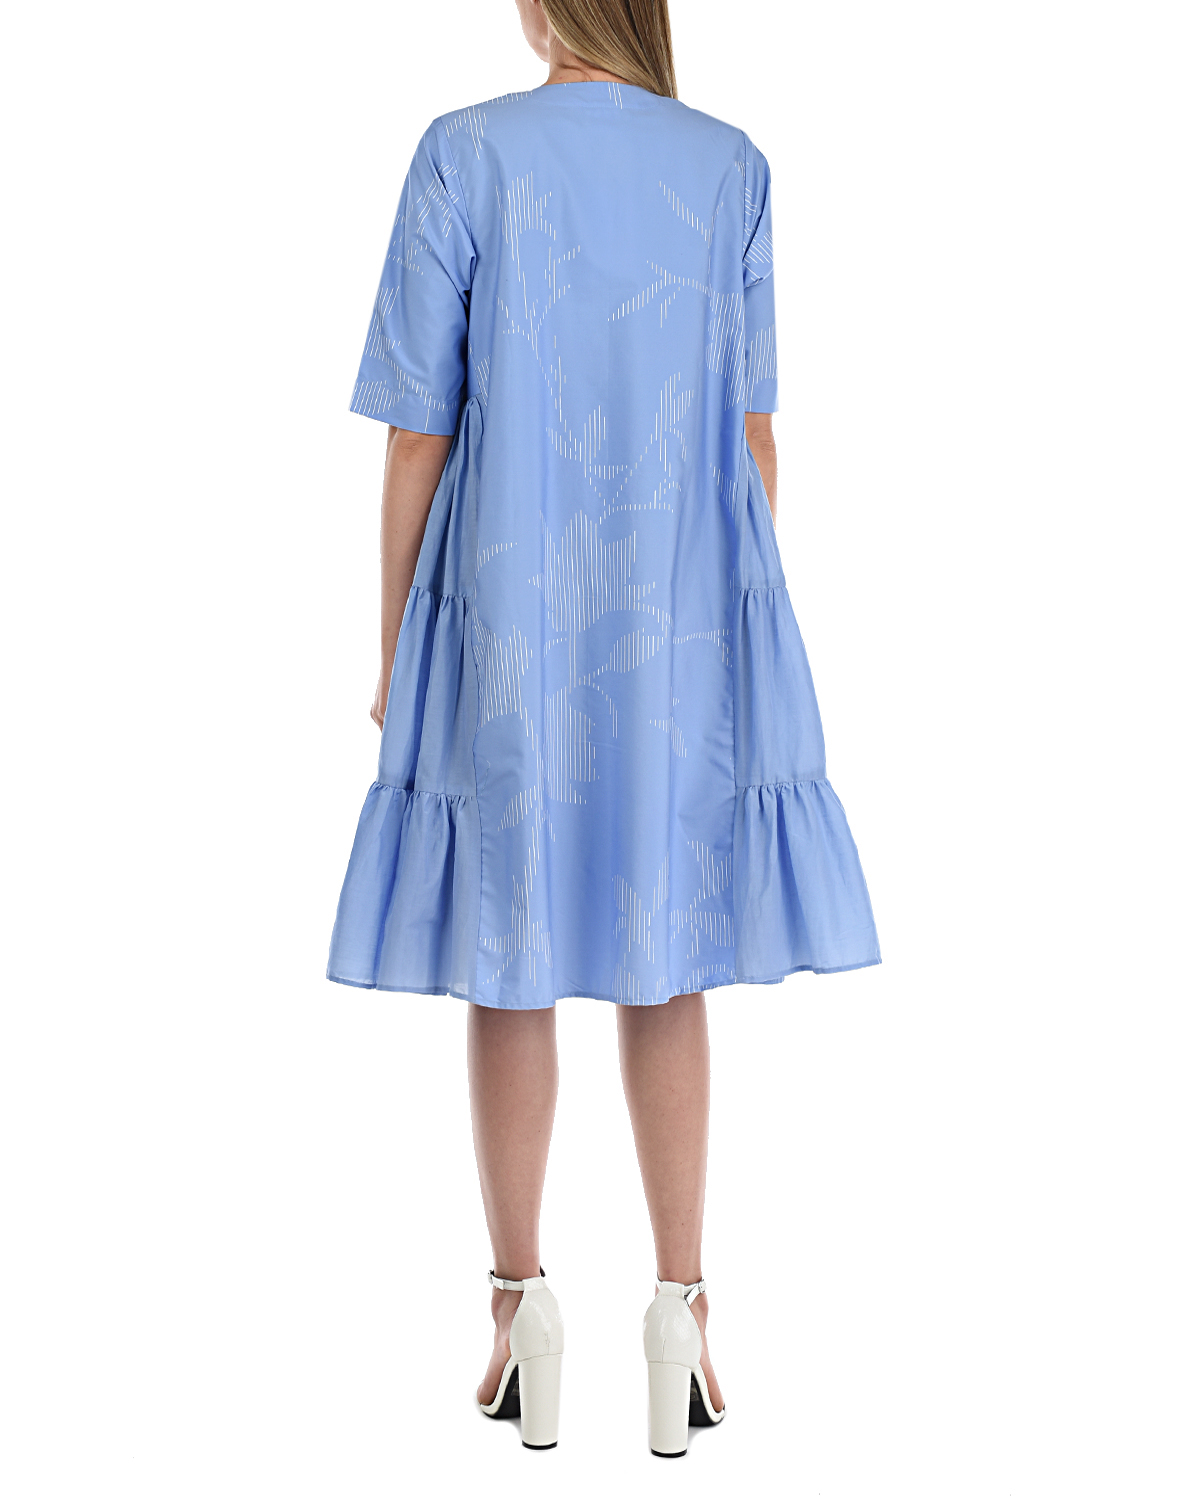 Голубое расклешенное платье LOVE BIRDS, размер 38, цвет голубой - фото 3